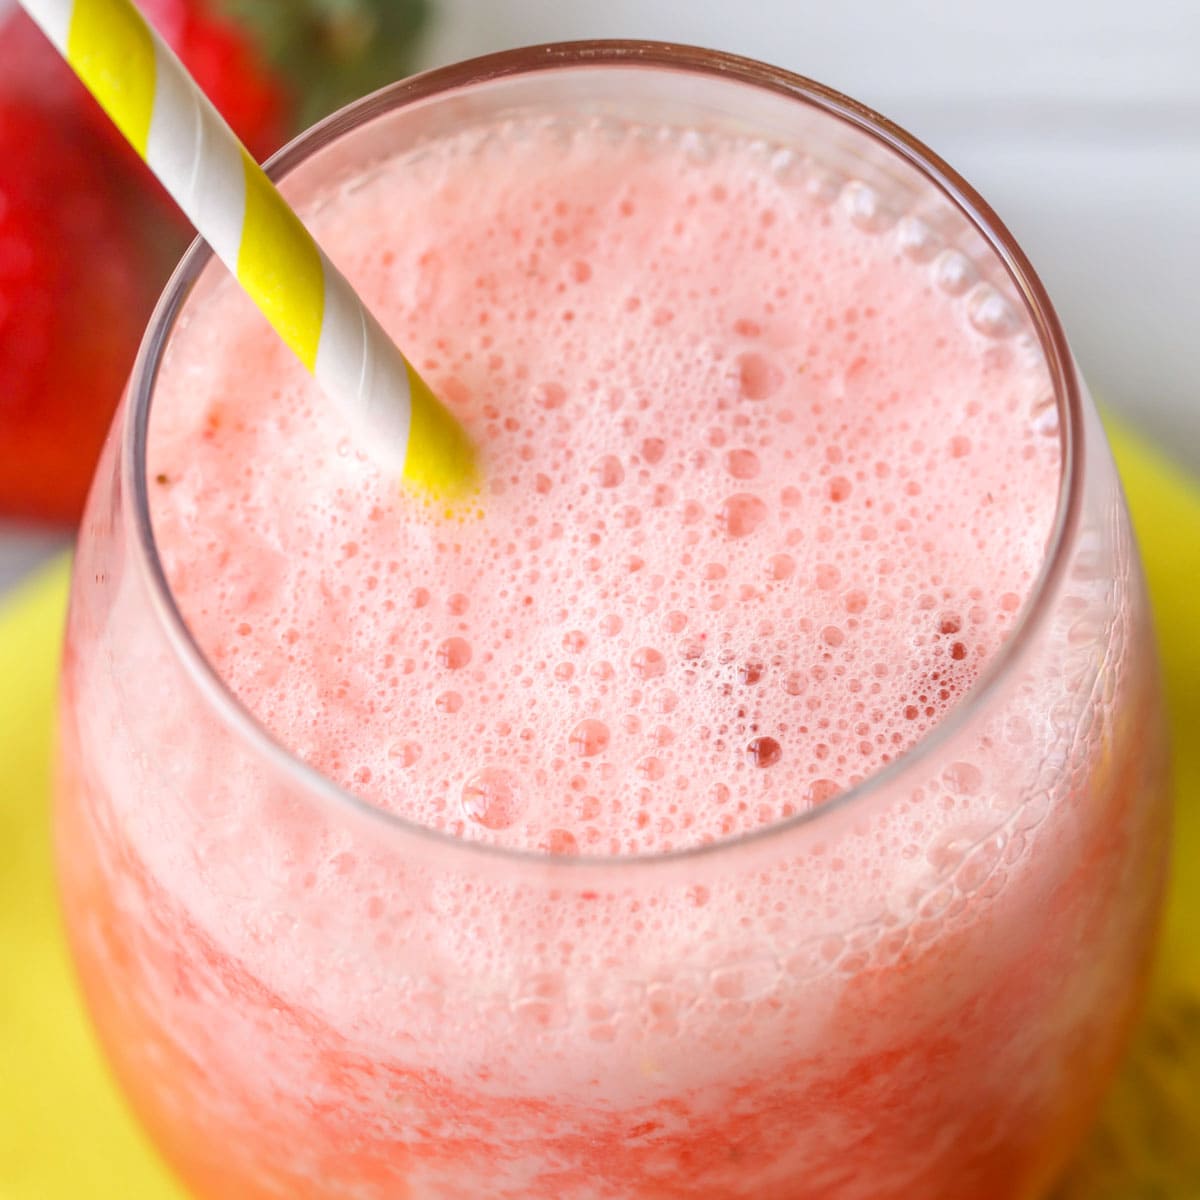 Frozen strawberry lemonade in a glass 